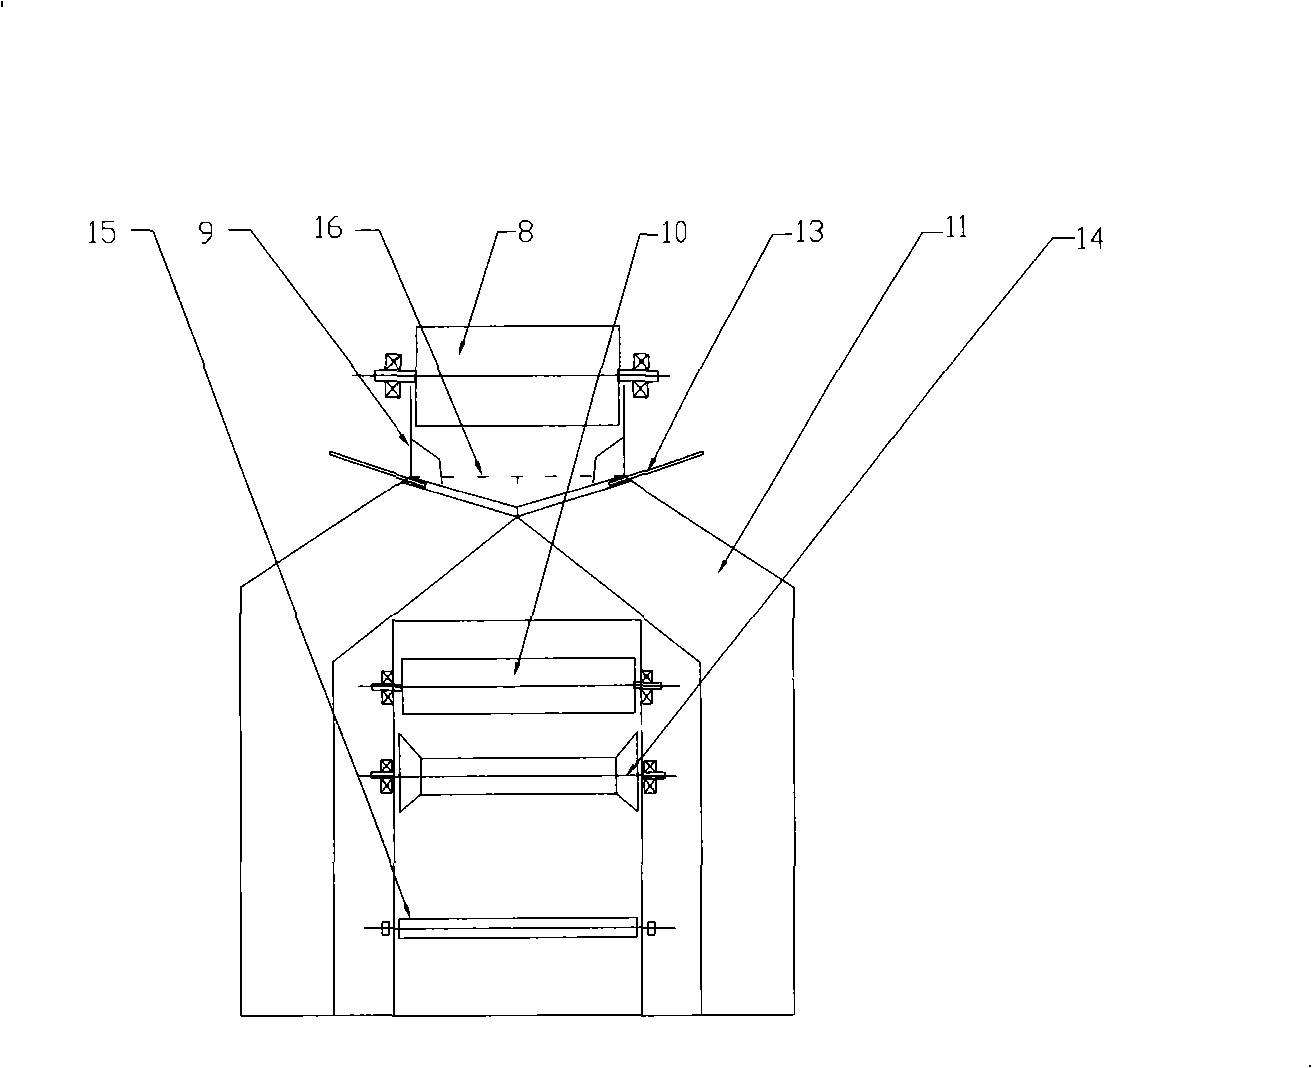 Bottom-top throwing multi-point discharging belt conveyor